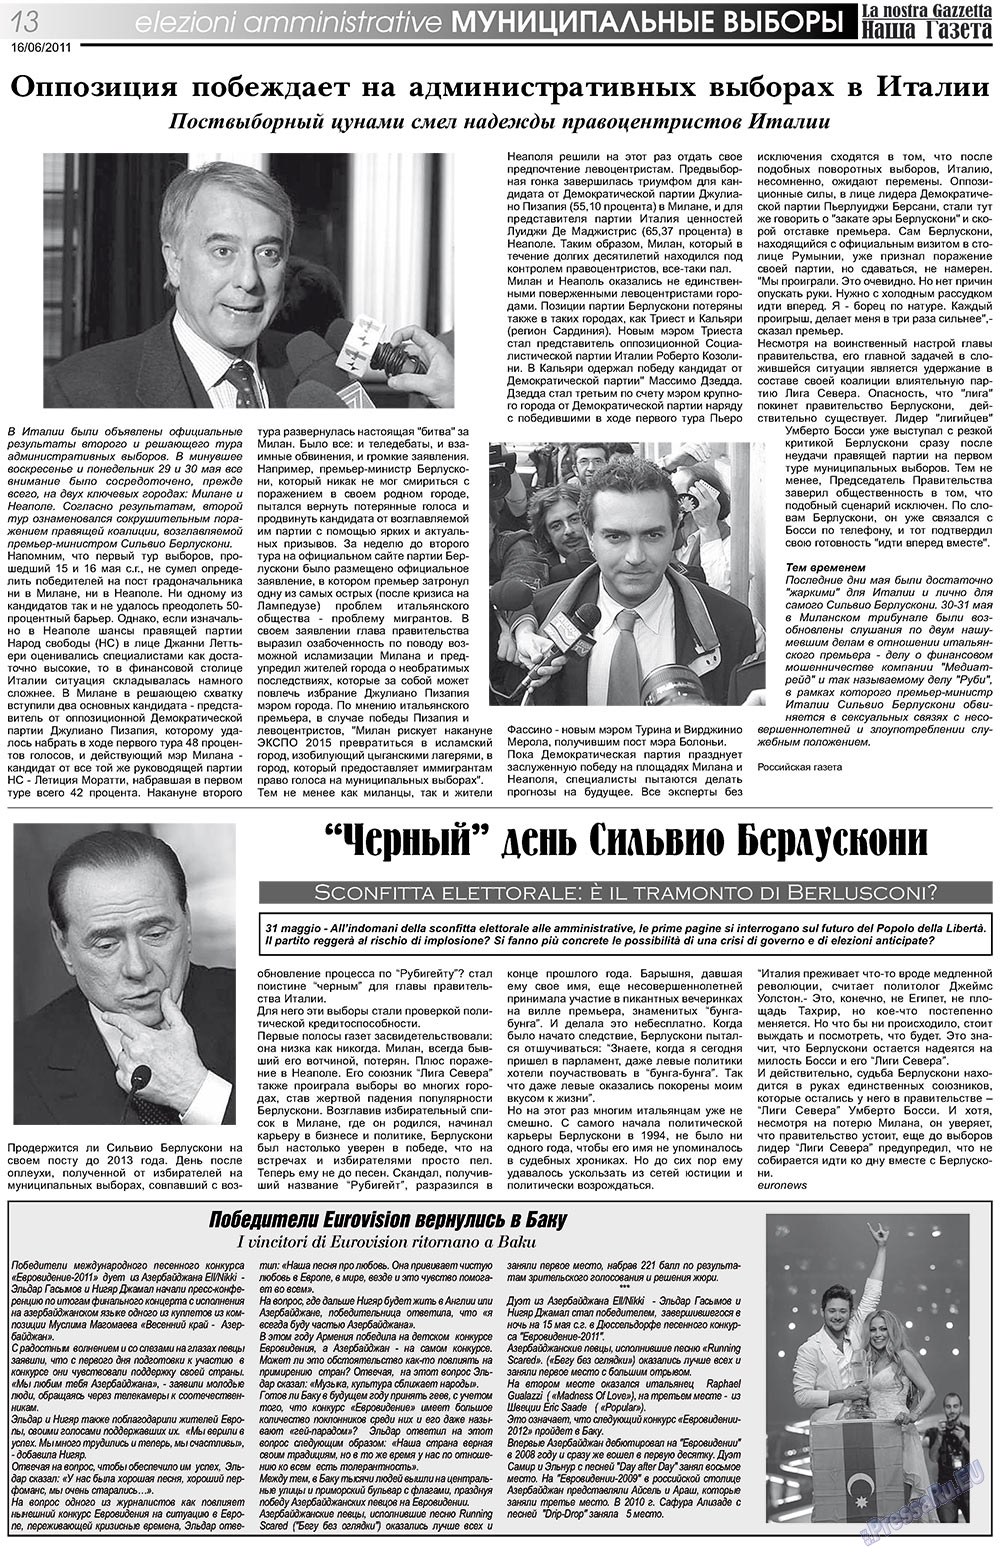 Наша Газета Италия, газета. 2011 №135 стр.13